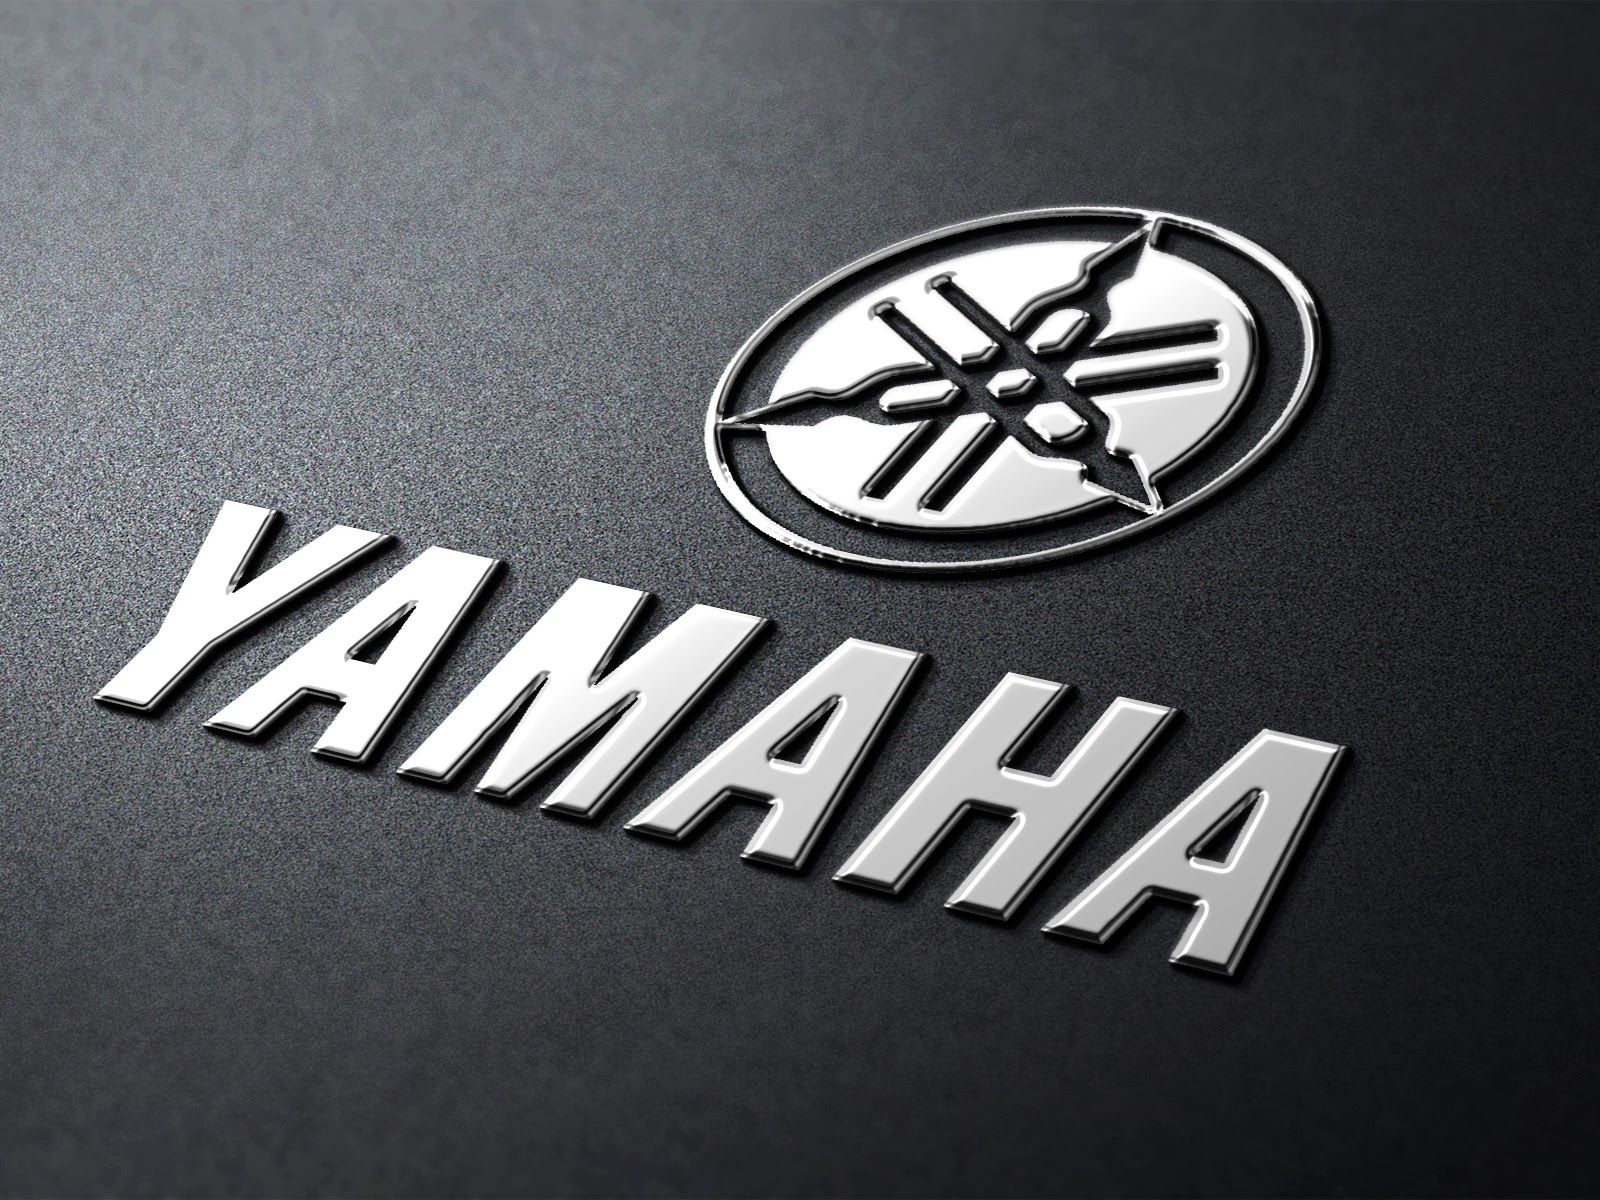 Yamaha Backrounds Wallpapers